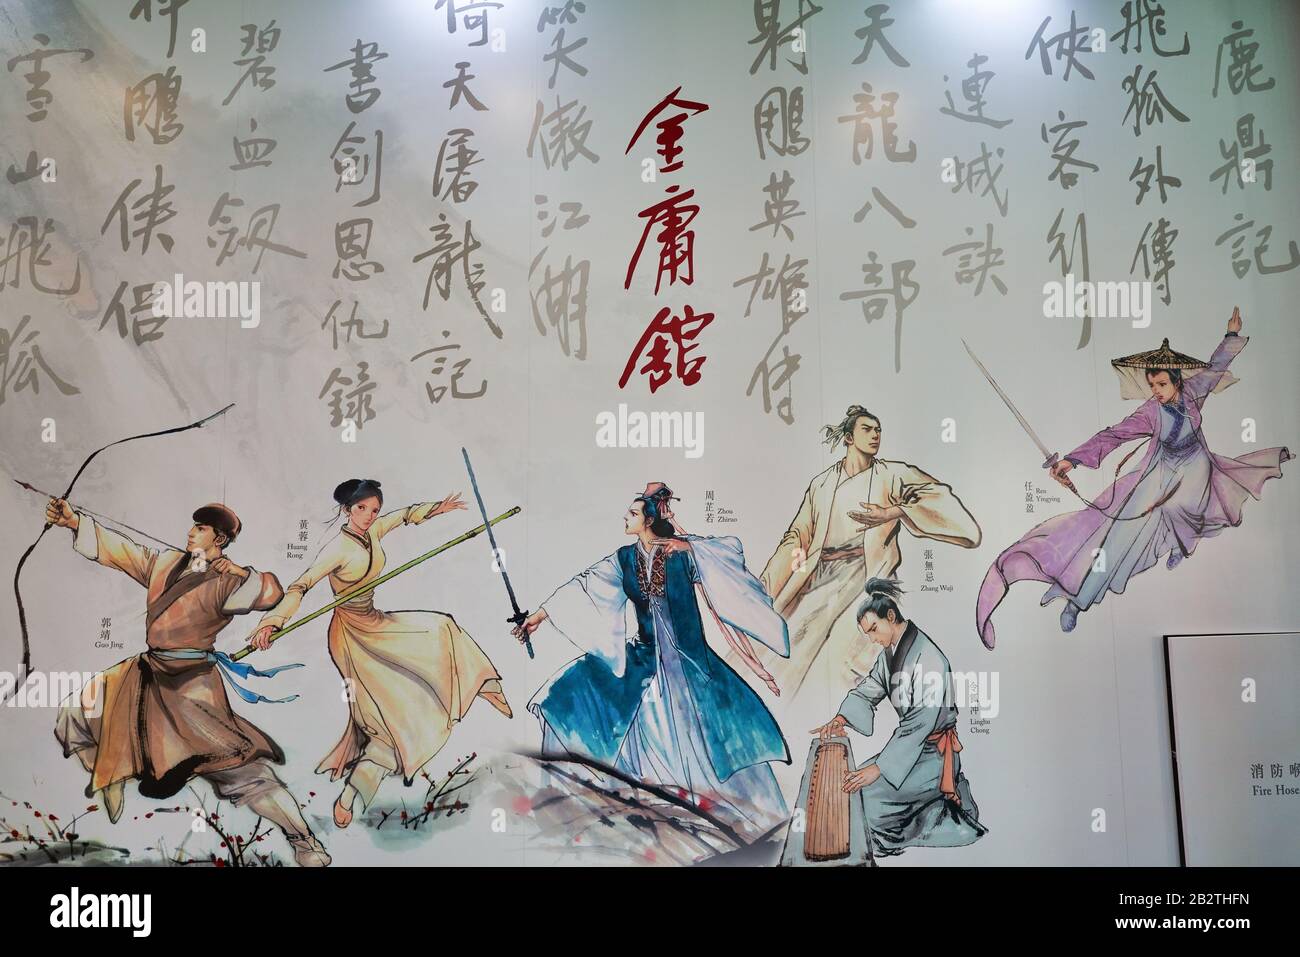 Hong KONG - 23 JANVIER 2019 : personnages des romans Wuxia de Jin Yong vus au Musée du patrimoine de Hong Kong. Banque D'Images